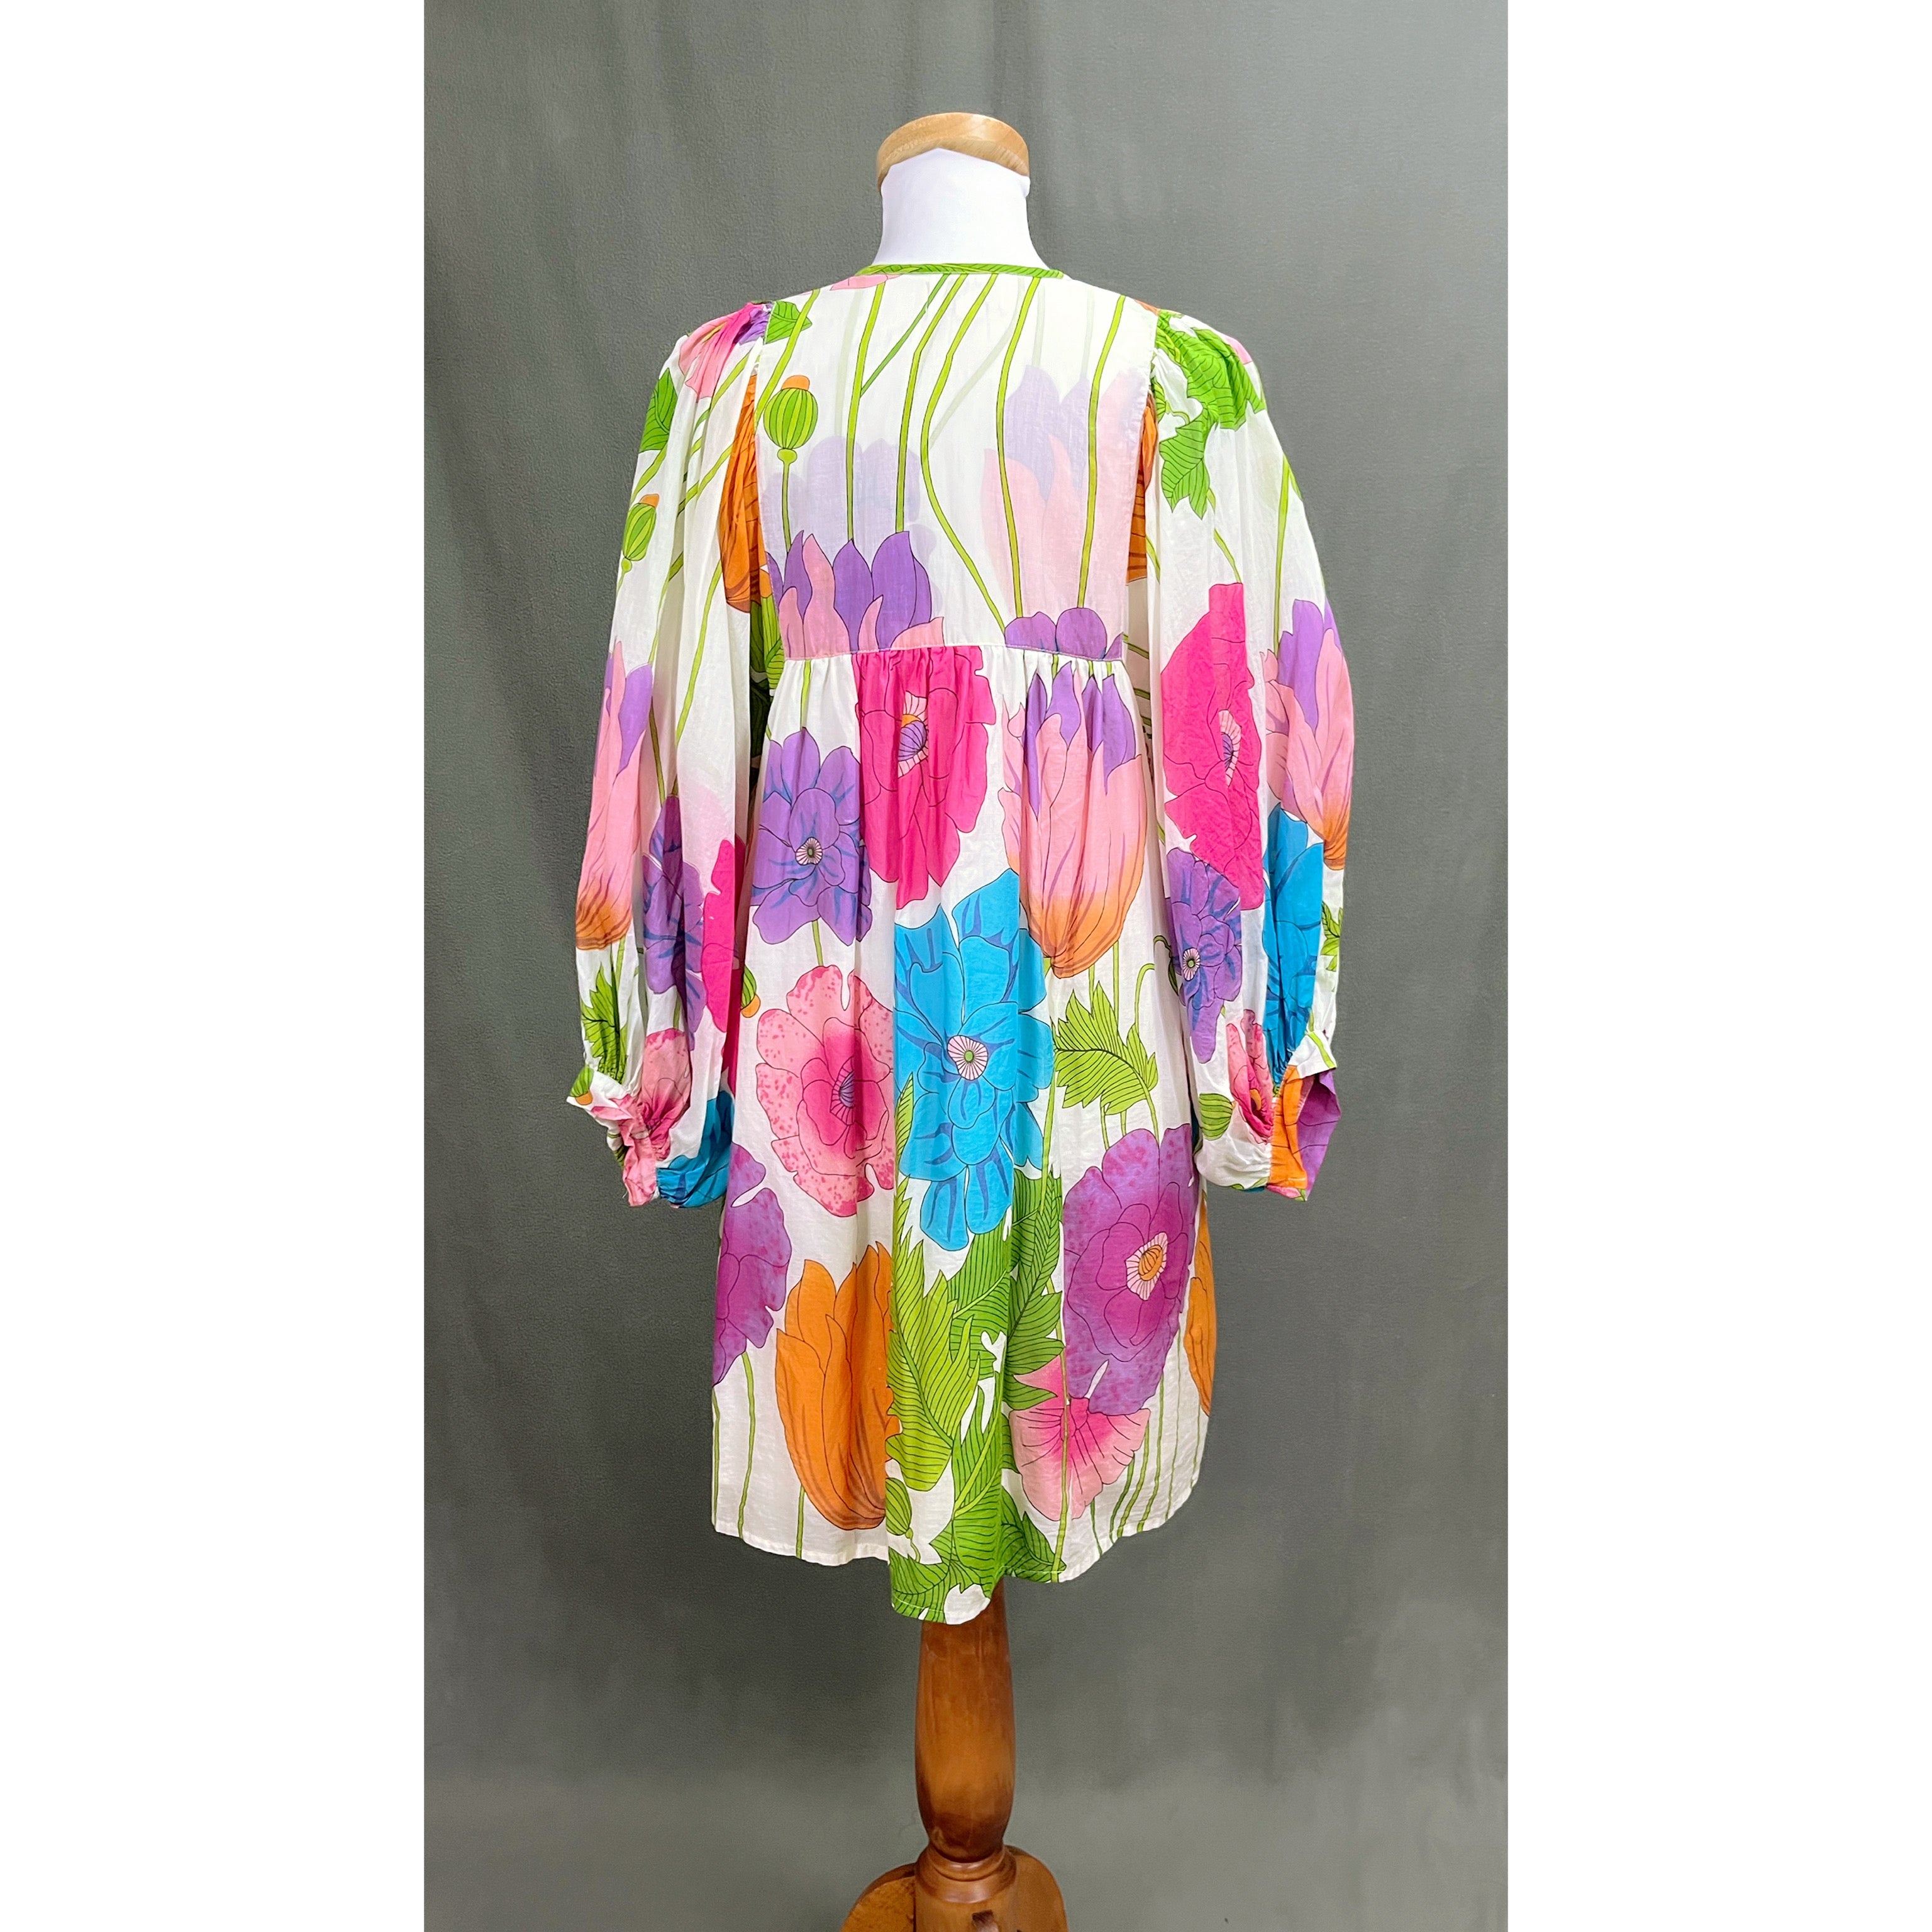 Mille multi-color floral Daisy dress, size L